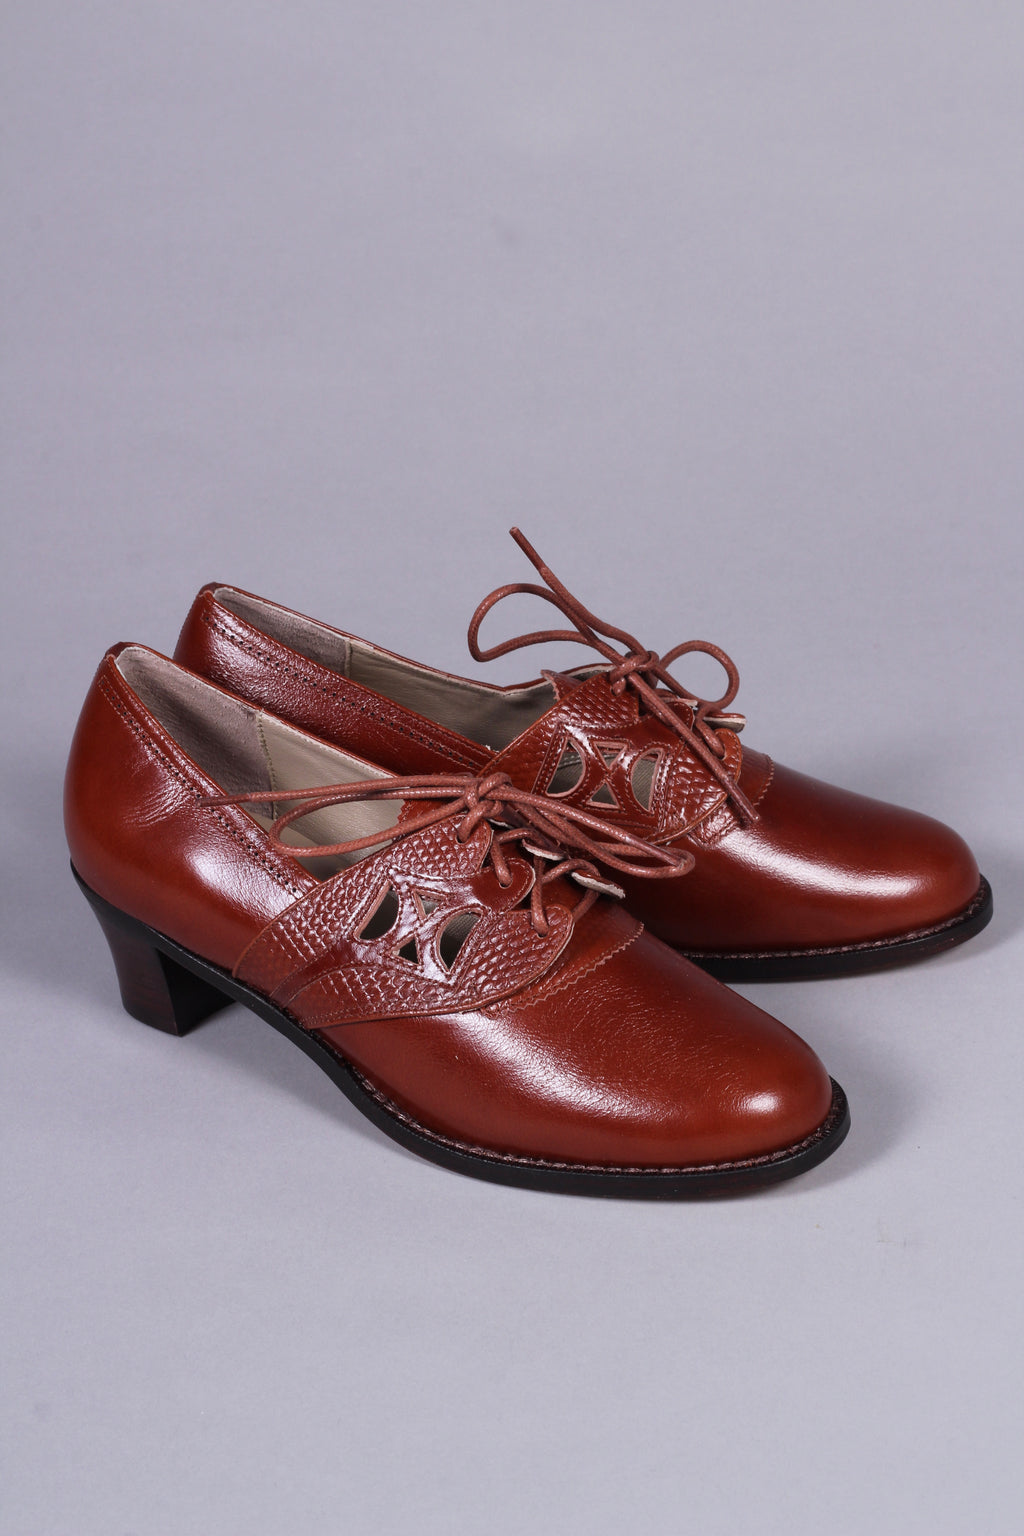 Amazon.co.uk: 1940s Shoes